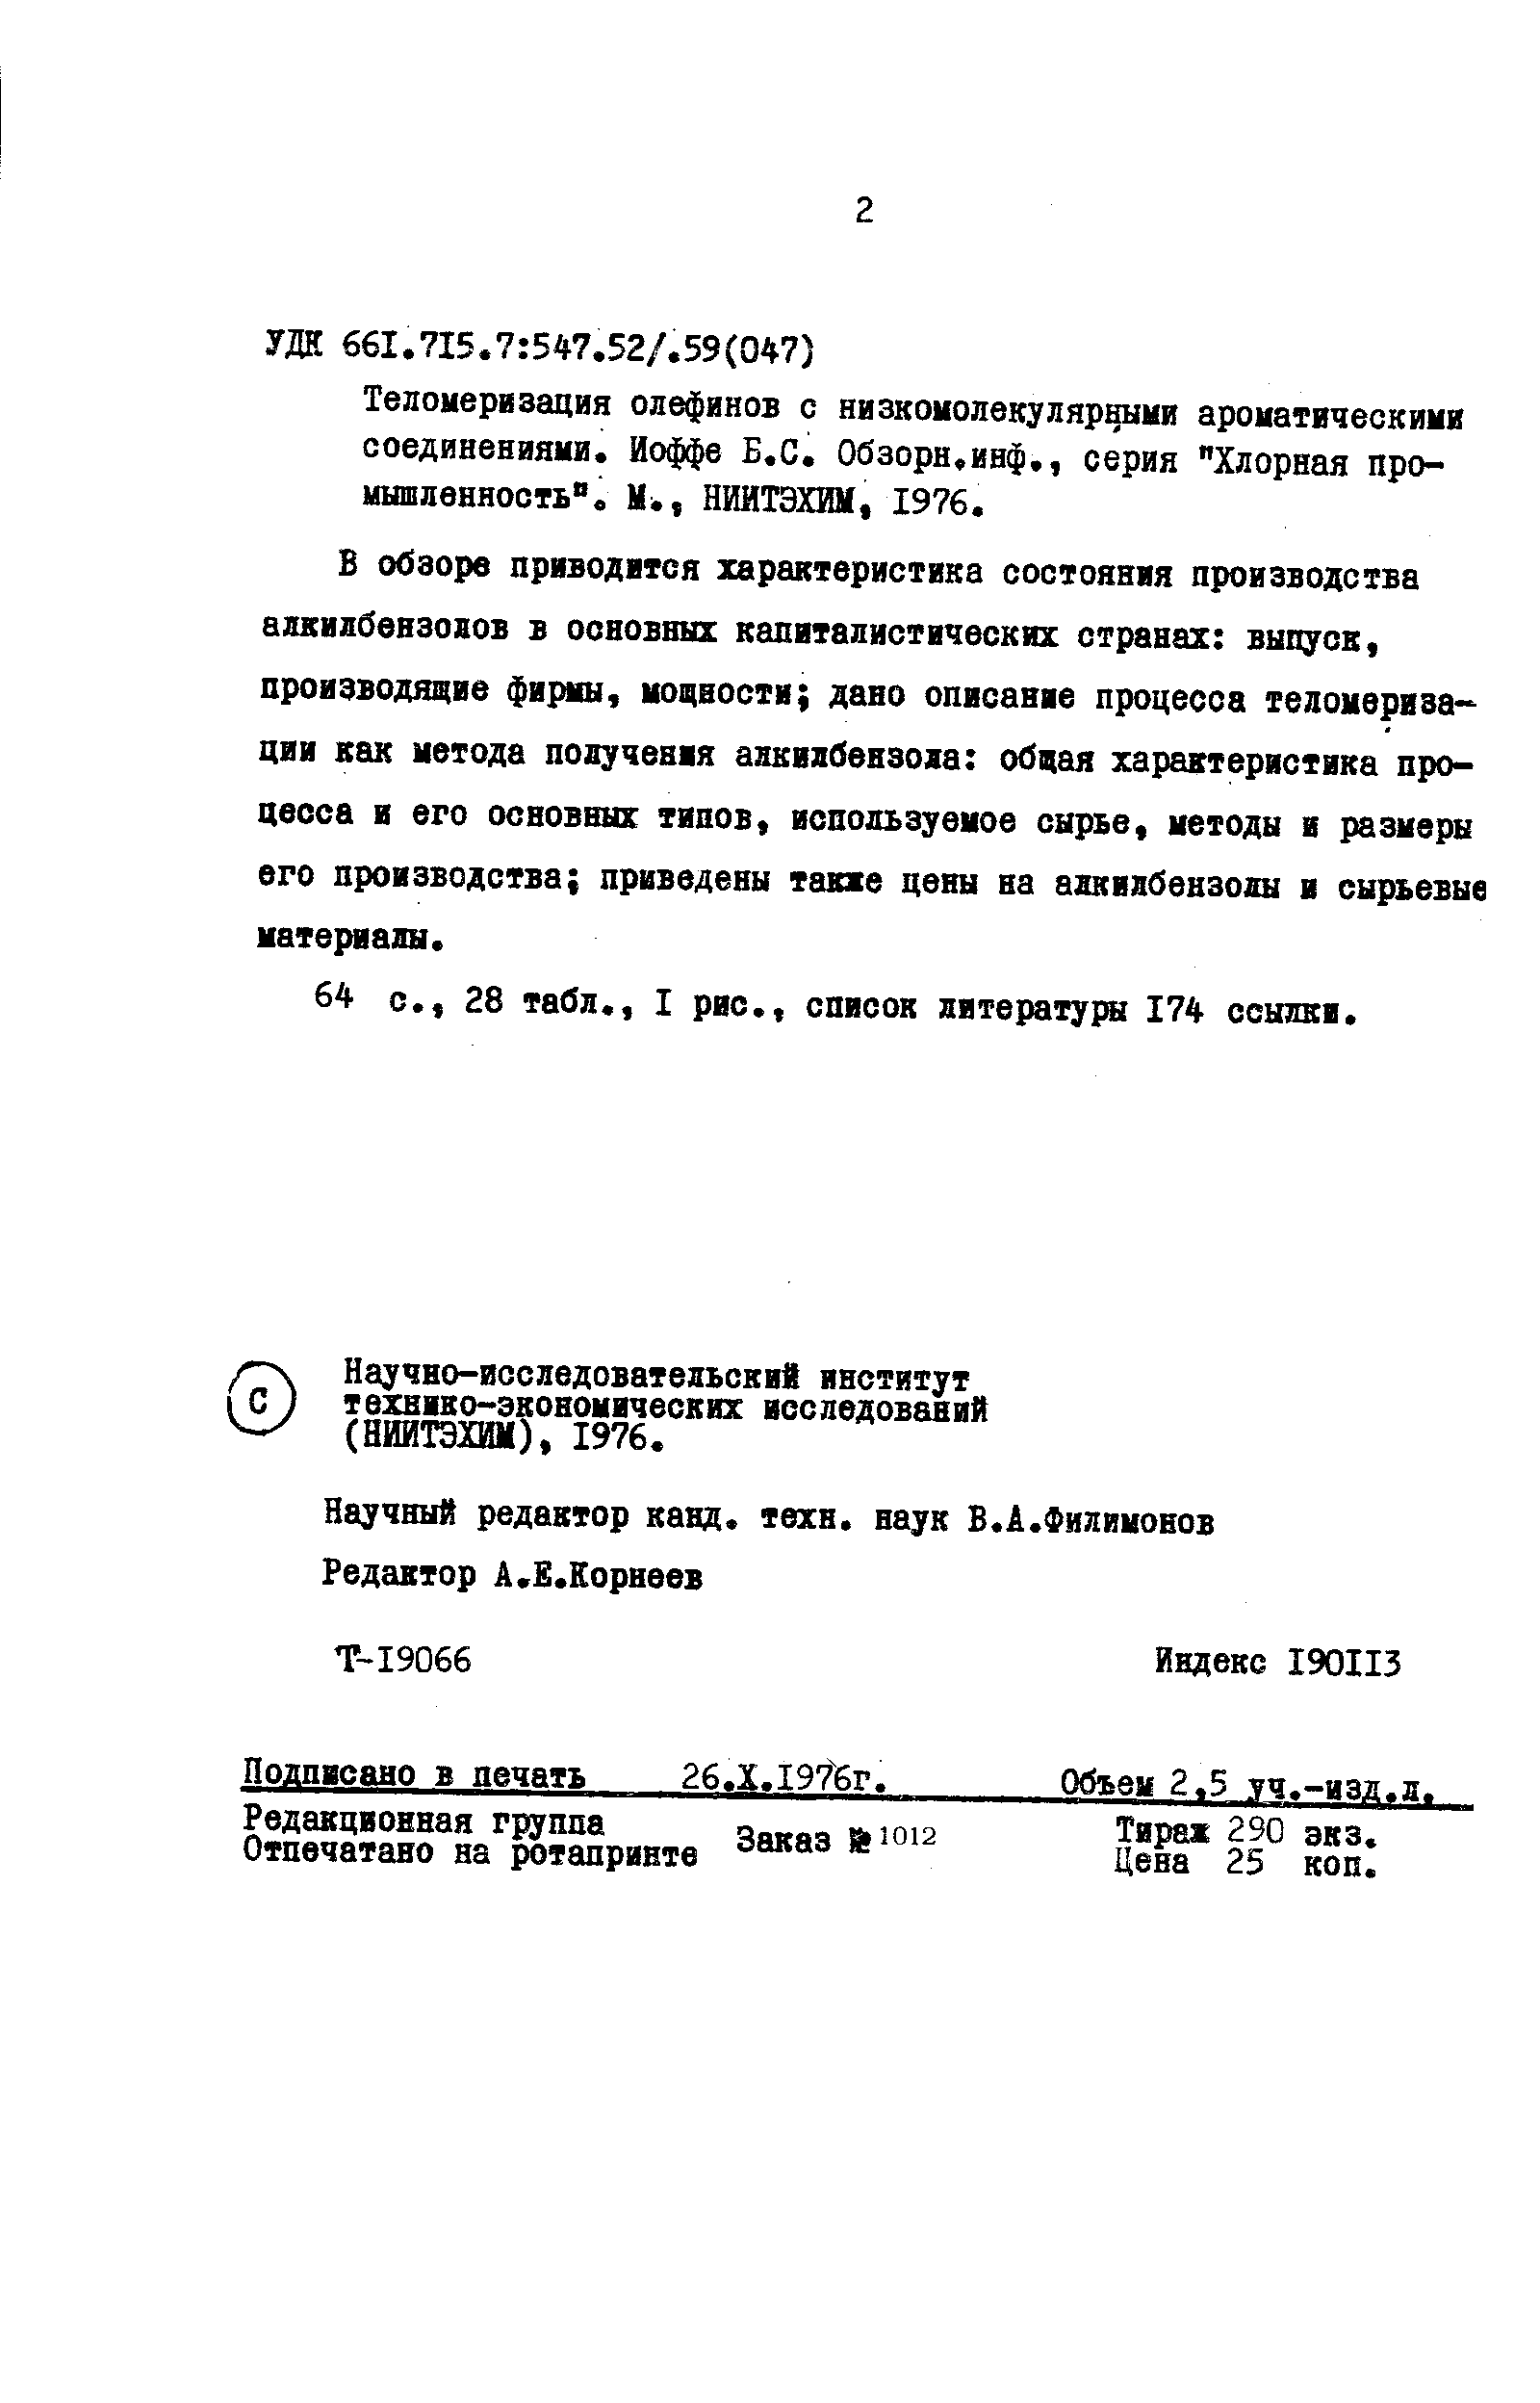 Научно-исследовательский институт технико-экономических исследований (НИИТЭХИМ), 1976.